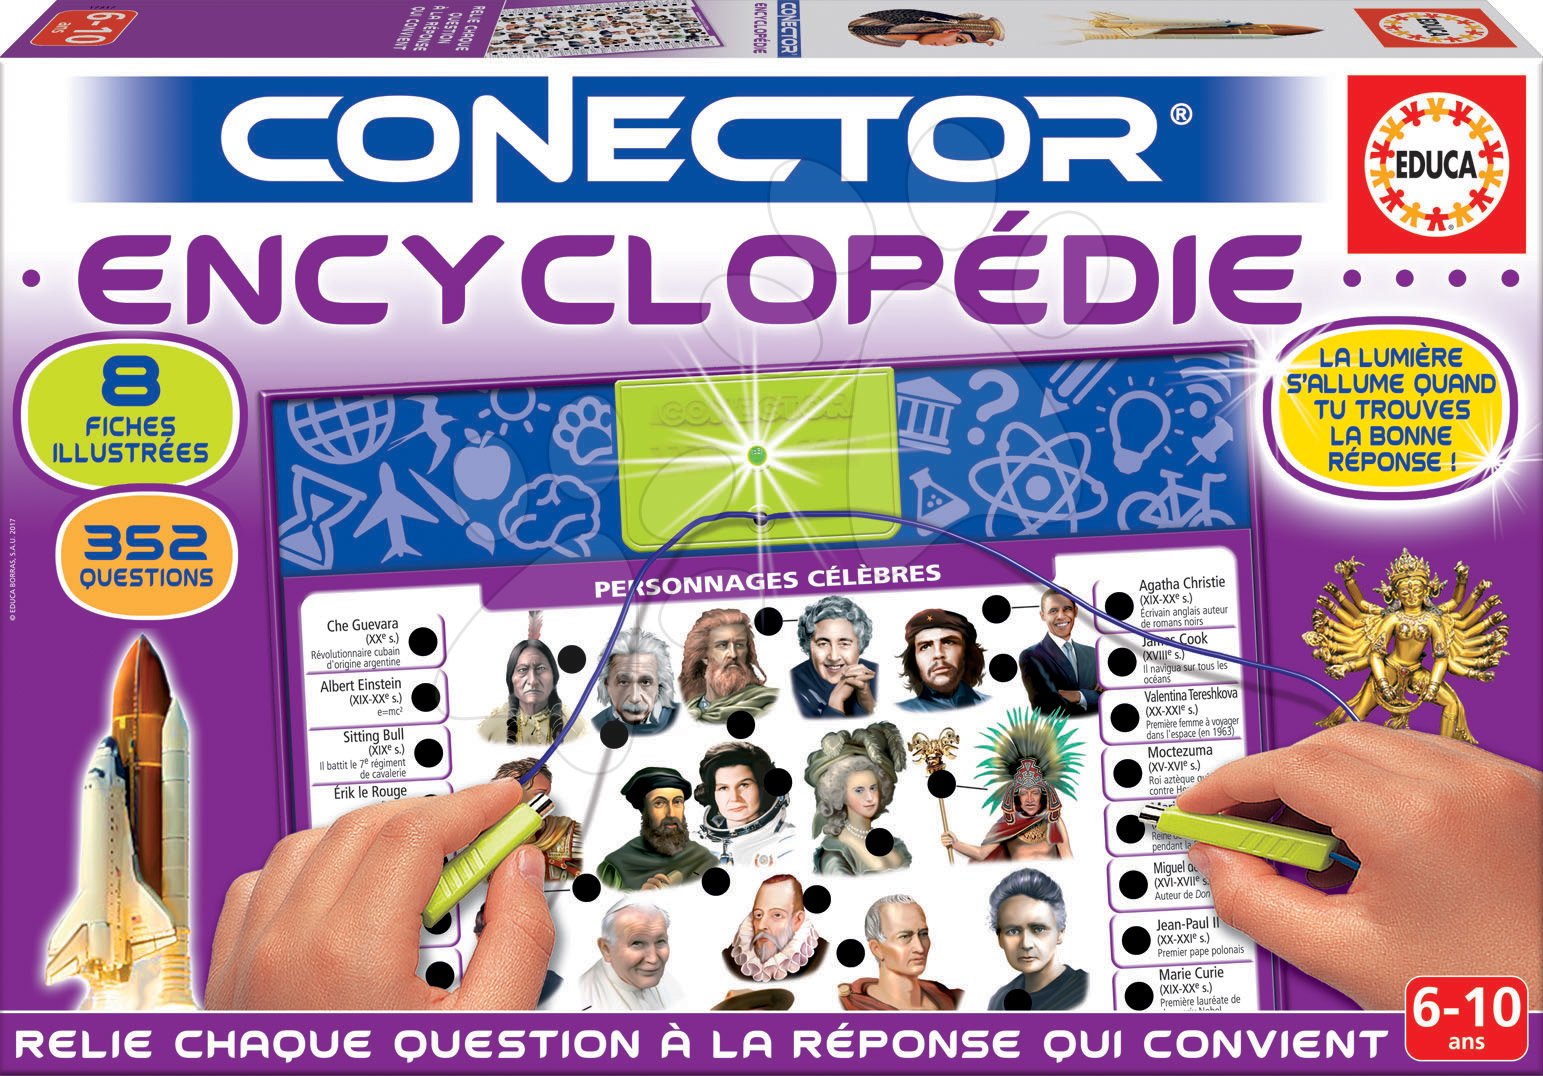 Cudzojazyčné spoločenské hry - Spoločenská hra Conector Educa Encyclopedie francúzsky 352 otázok od 6 rokov